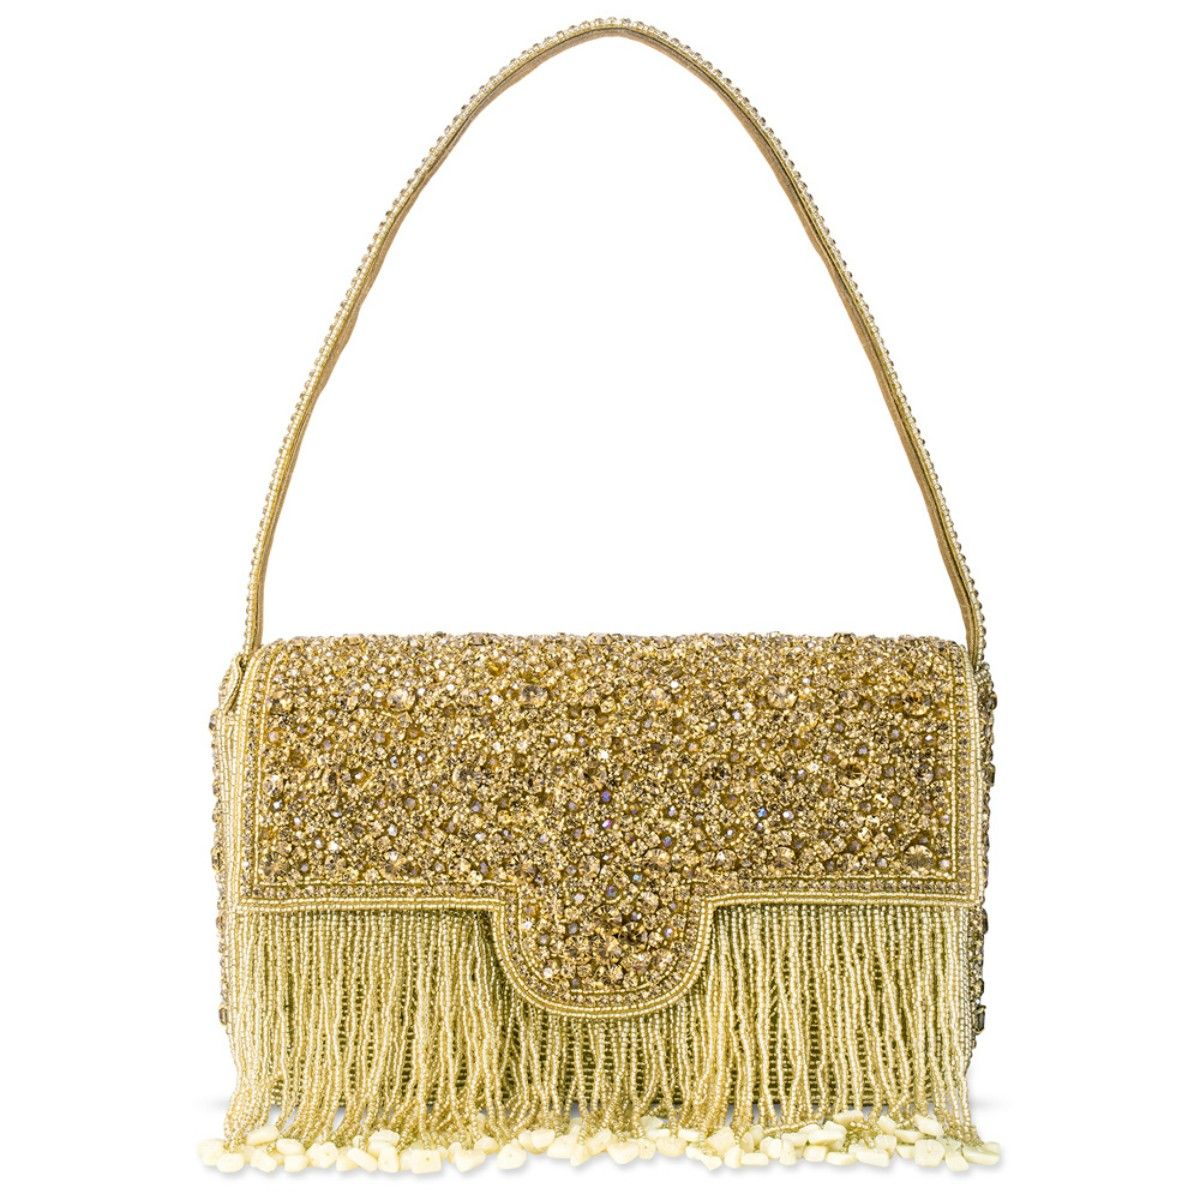 Buy Golden Handbags for Women by Lancel Online | Ajio.com